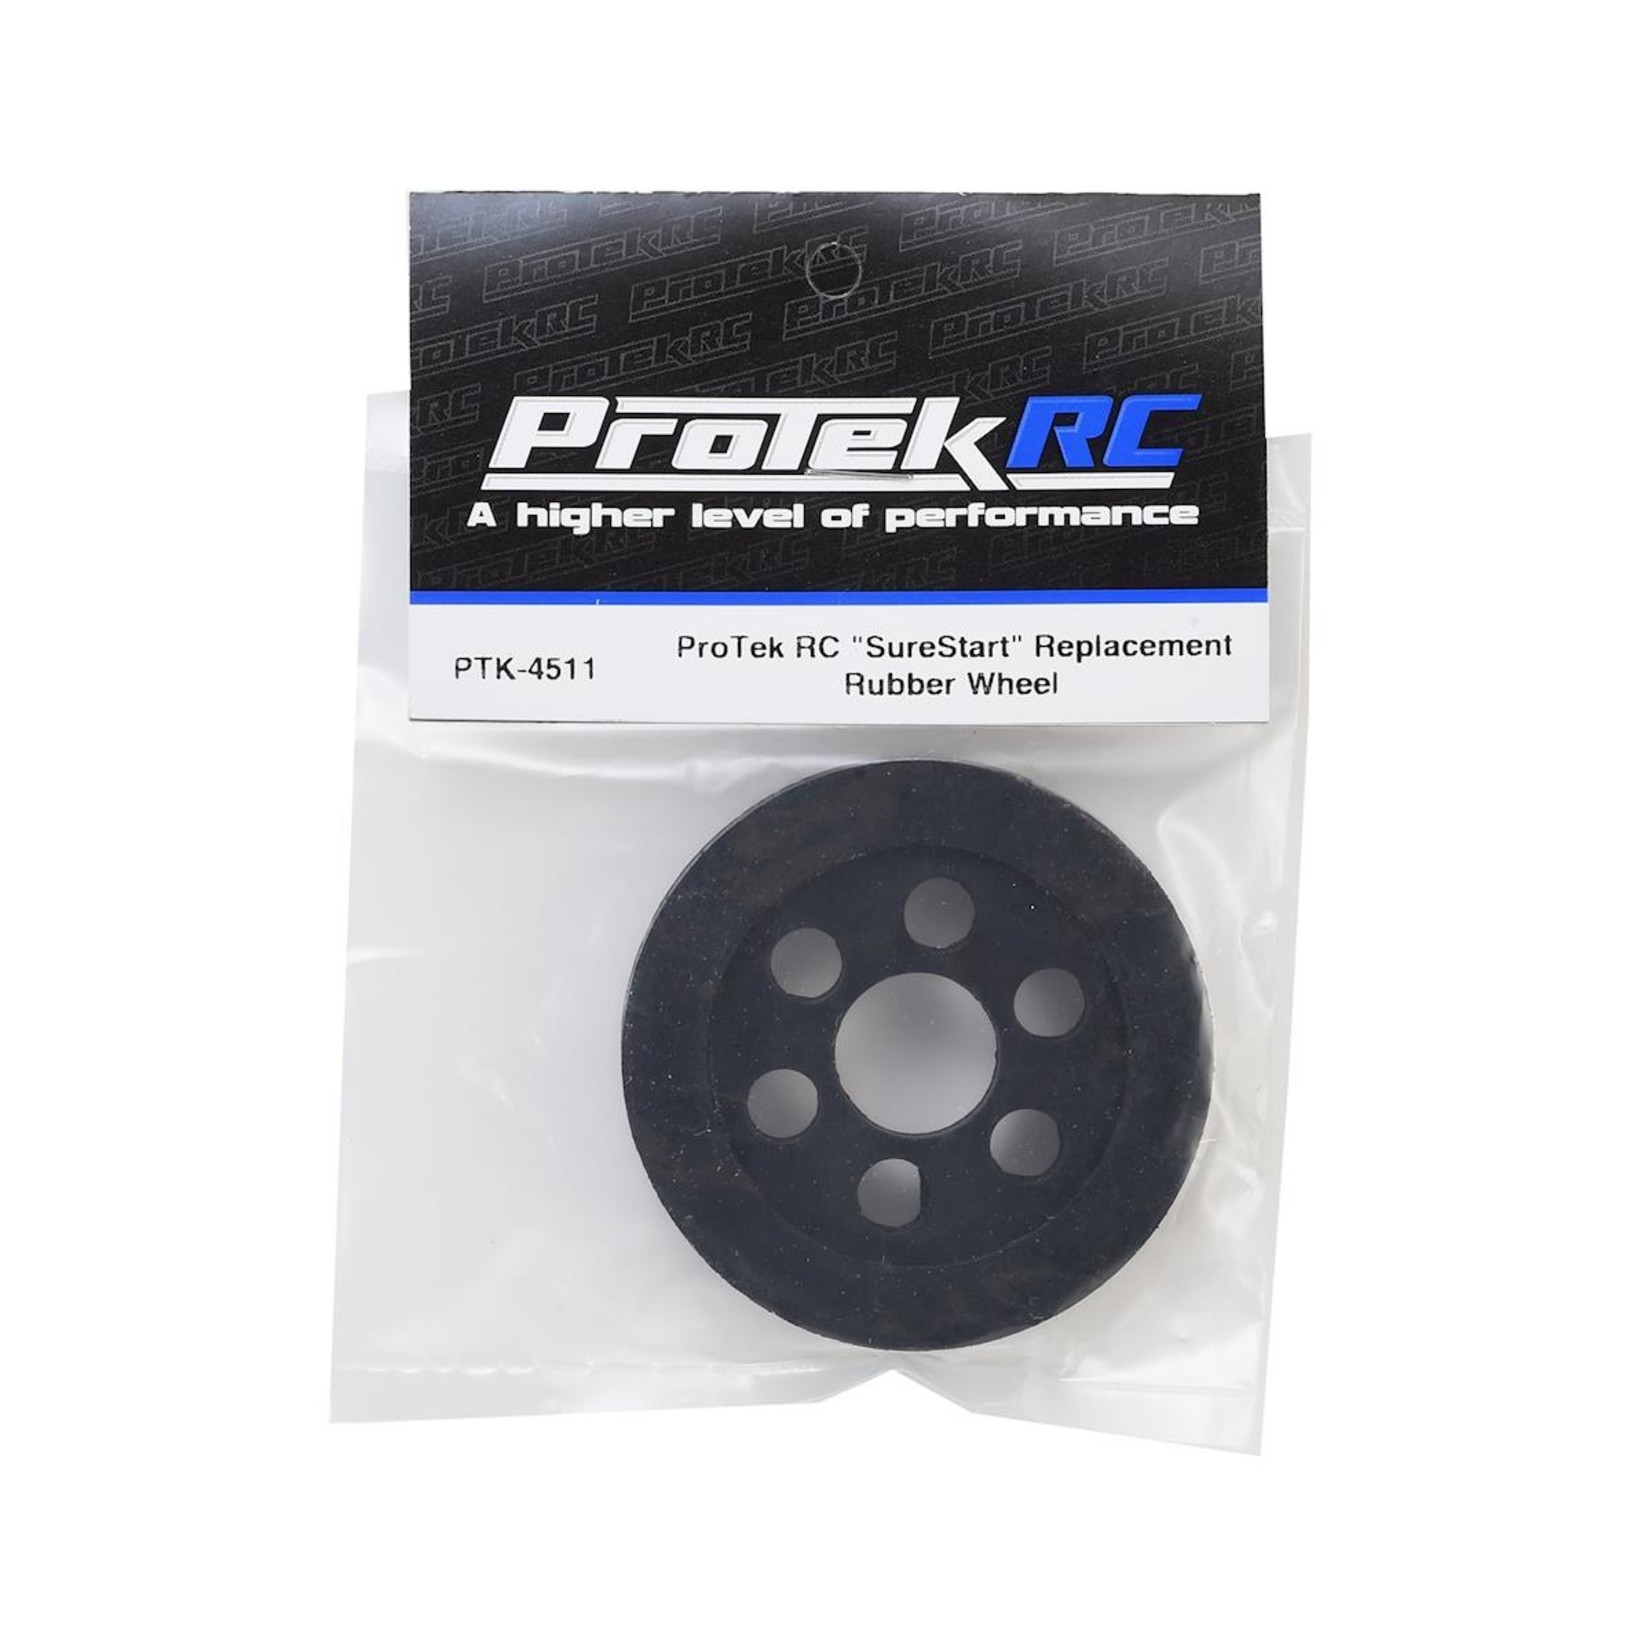 Protek R/C PTK-4511 Surestart Replacement Rubber Wheel